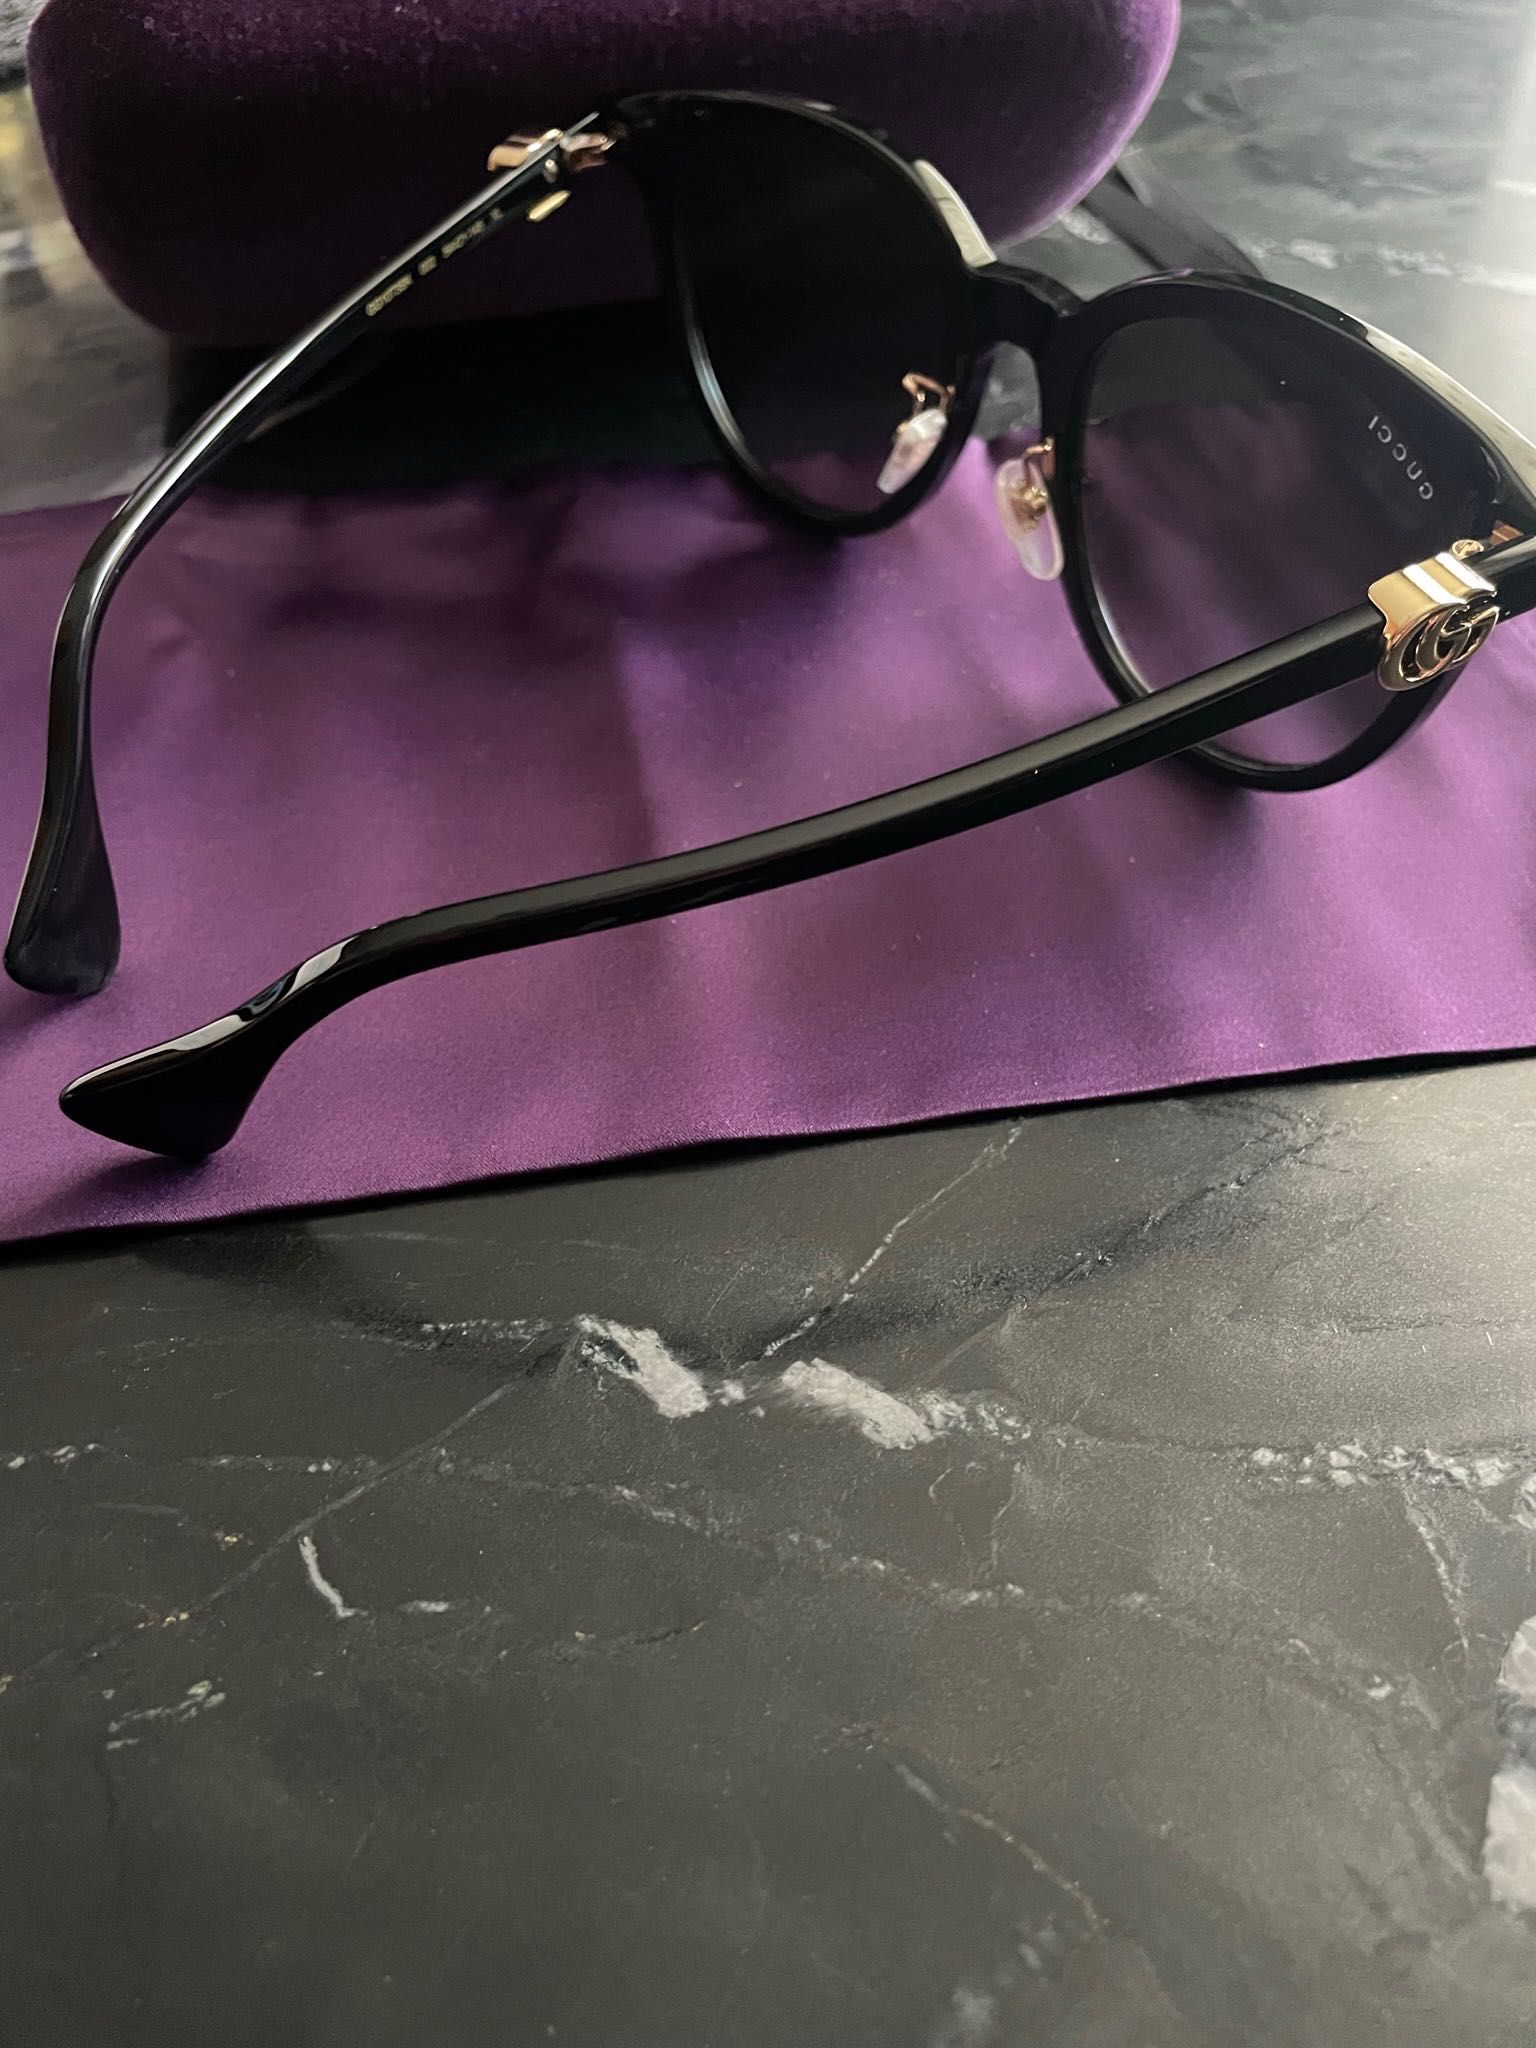 Okulary przeciwsłoneczne - Gucci - rozmiar 54